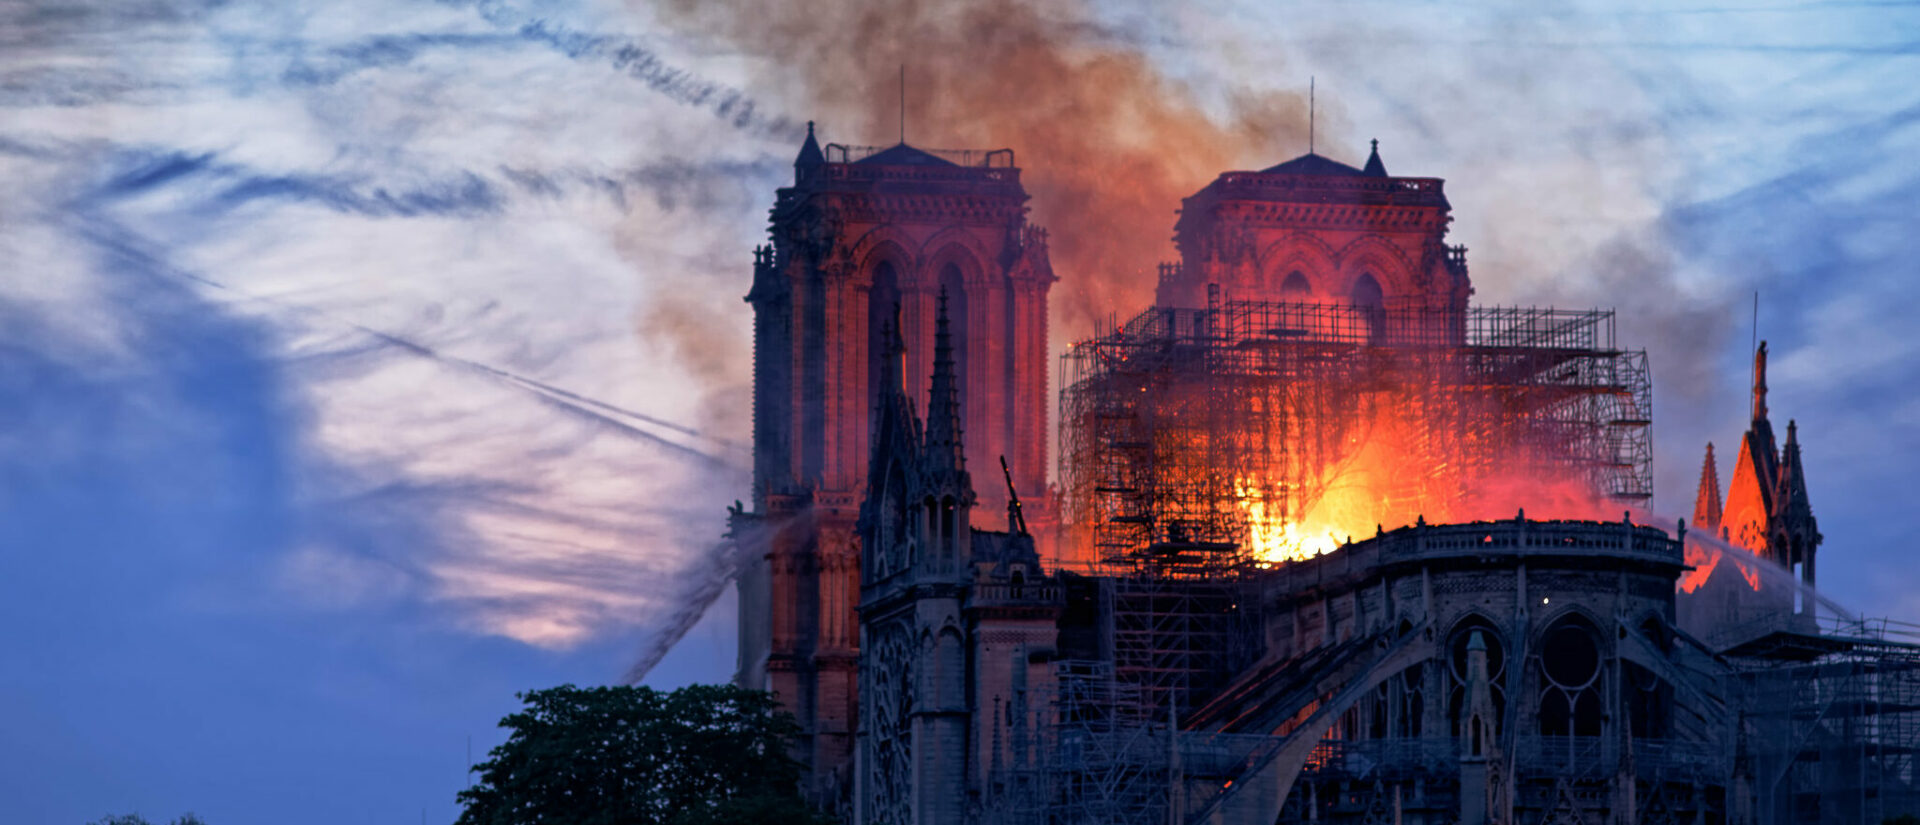 L'incendie de Notre-Dame de Paris, le 15 avril 2019, a inspiré de nombreux projets de films | © Olivier Mabelly/Flickr/CC BY-NC 2.0